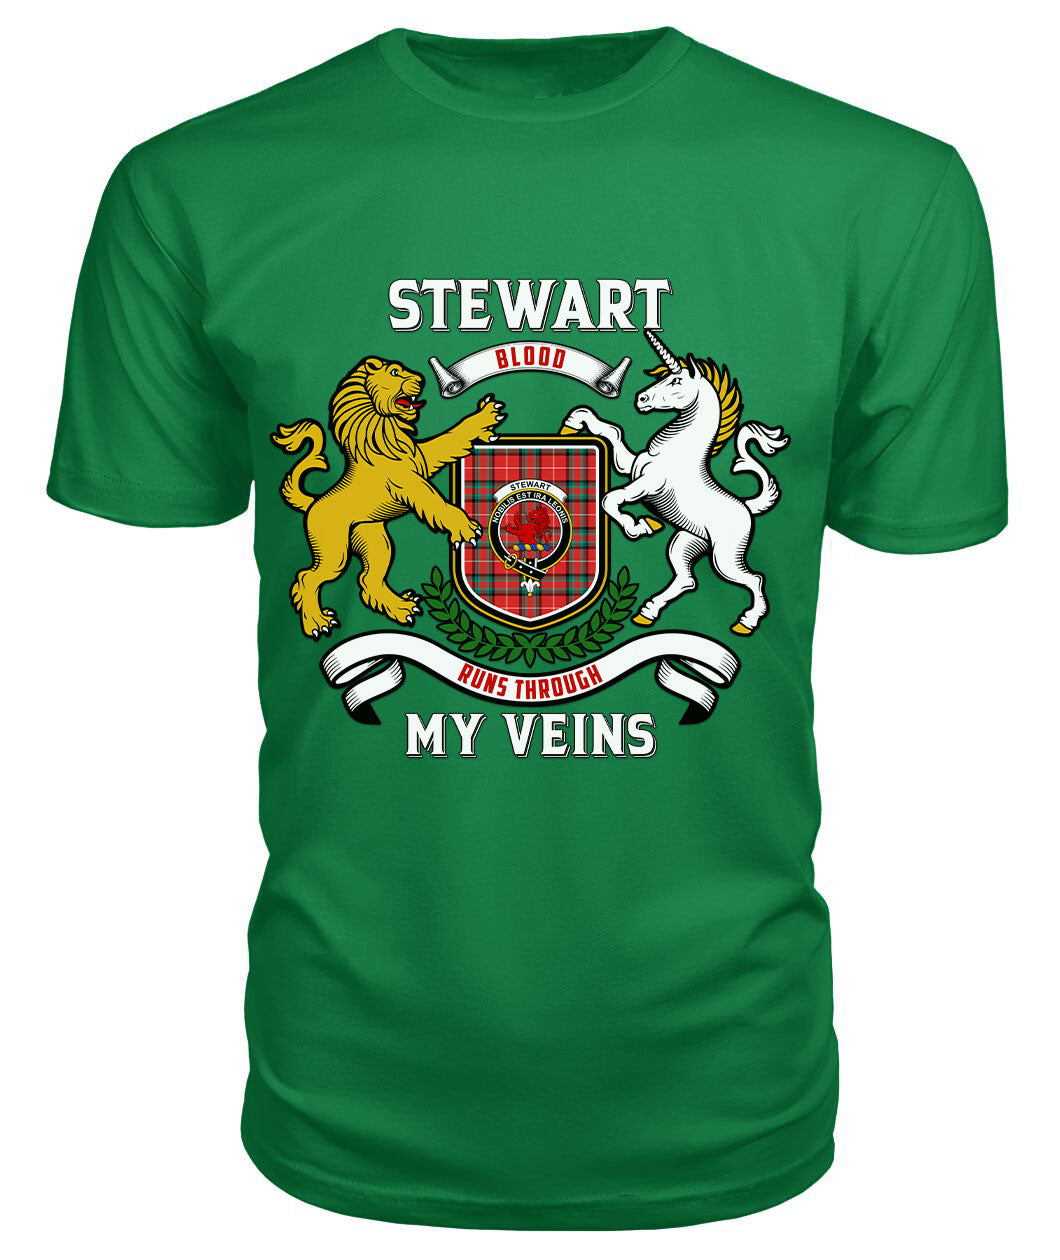 Stewart (Stuart) of Bute Tartan Crest 2D T-shirt - Blood Runs Through My Veins Style